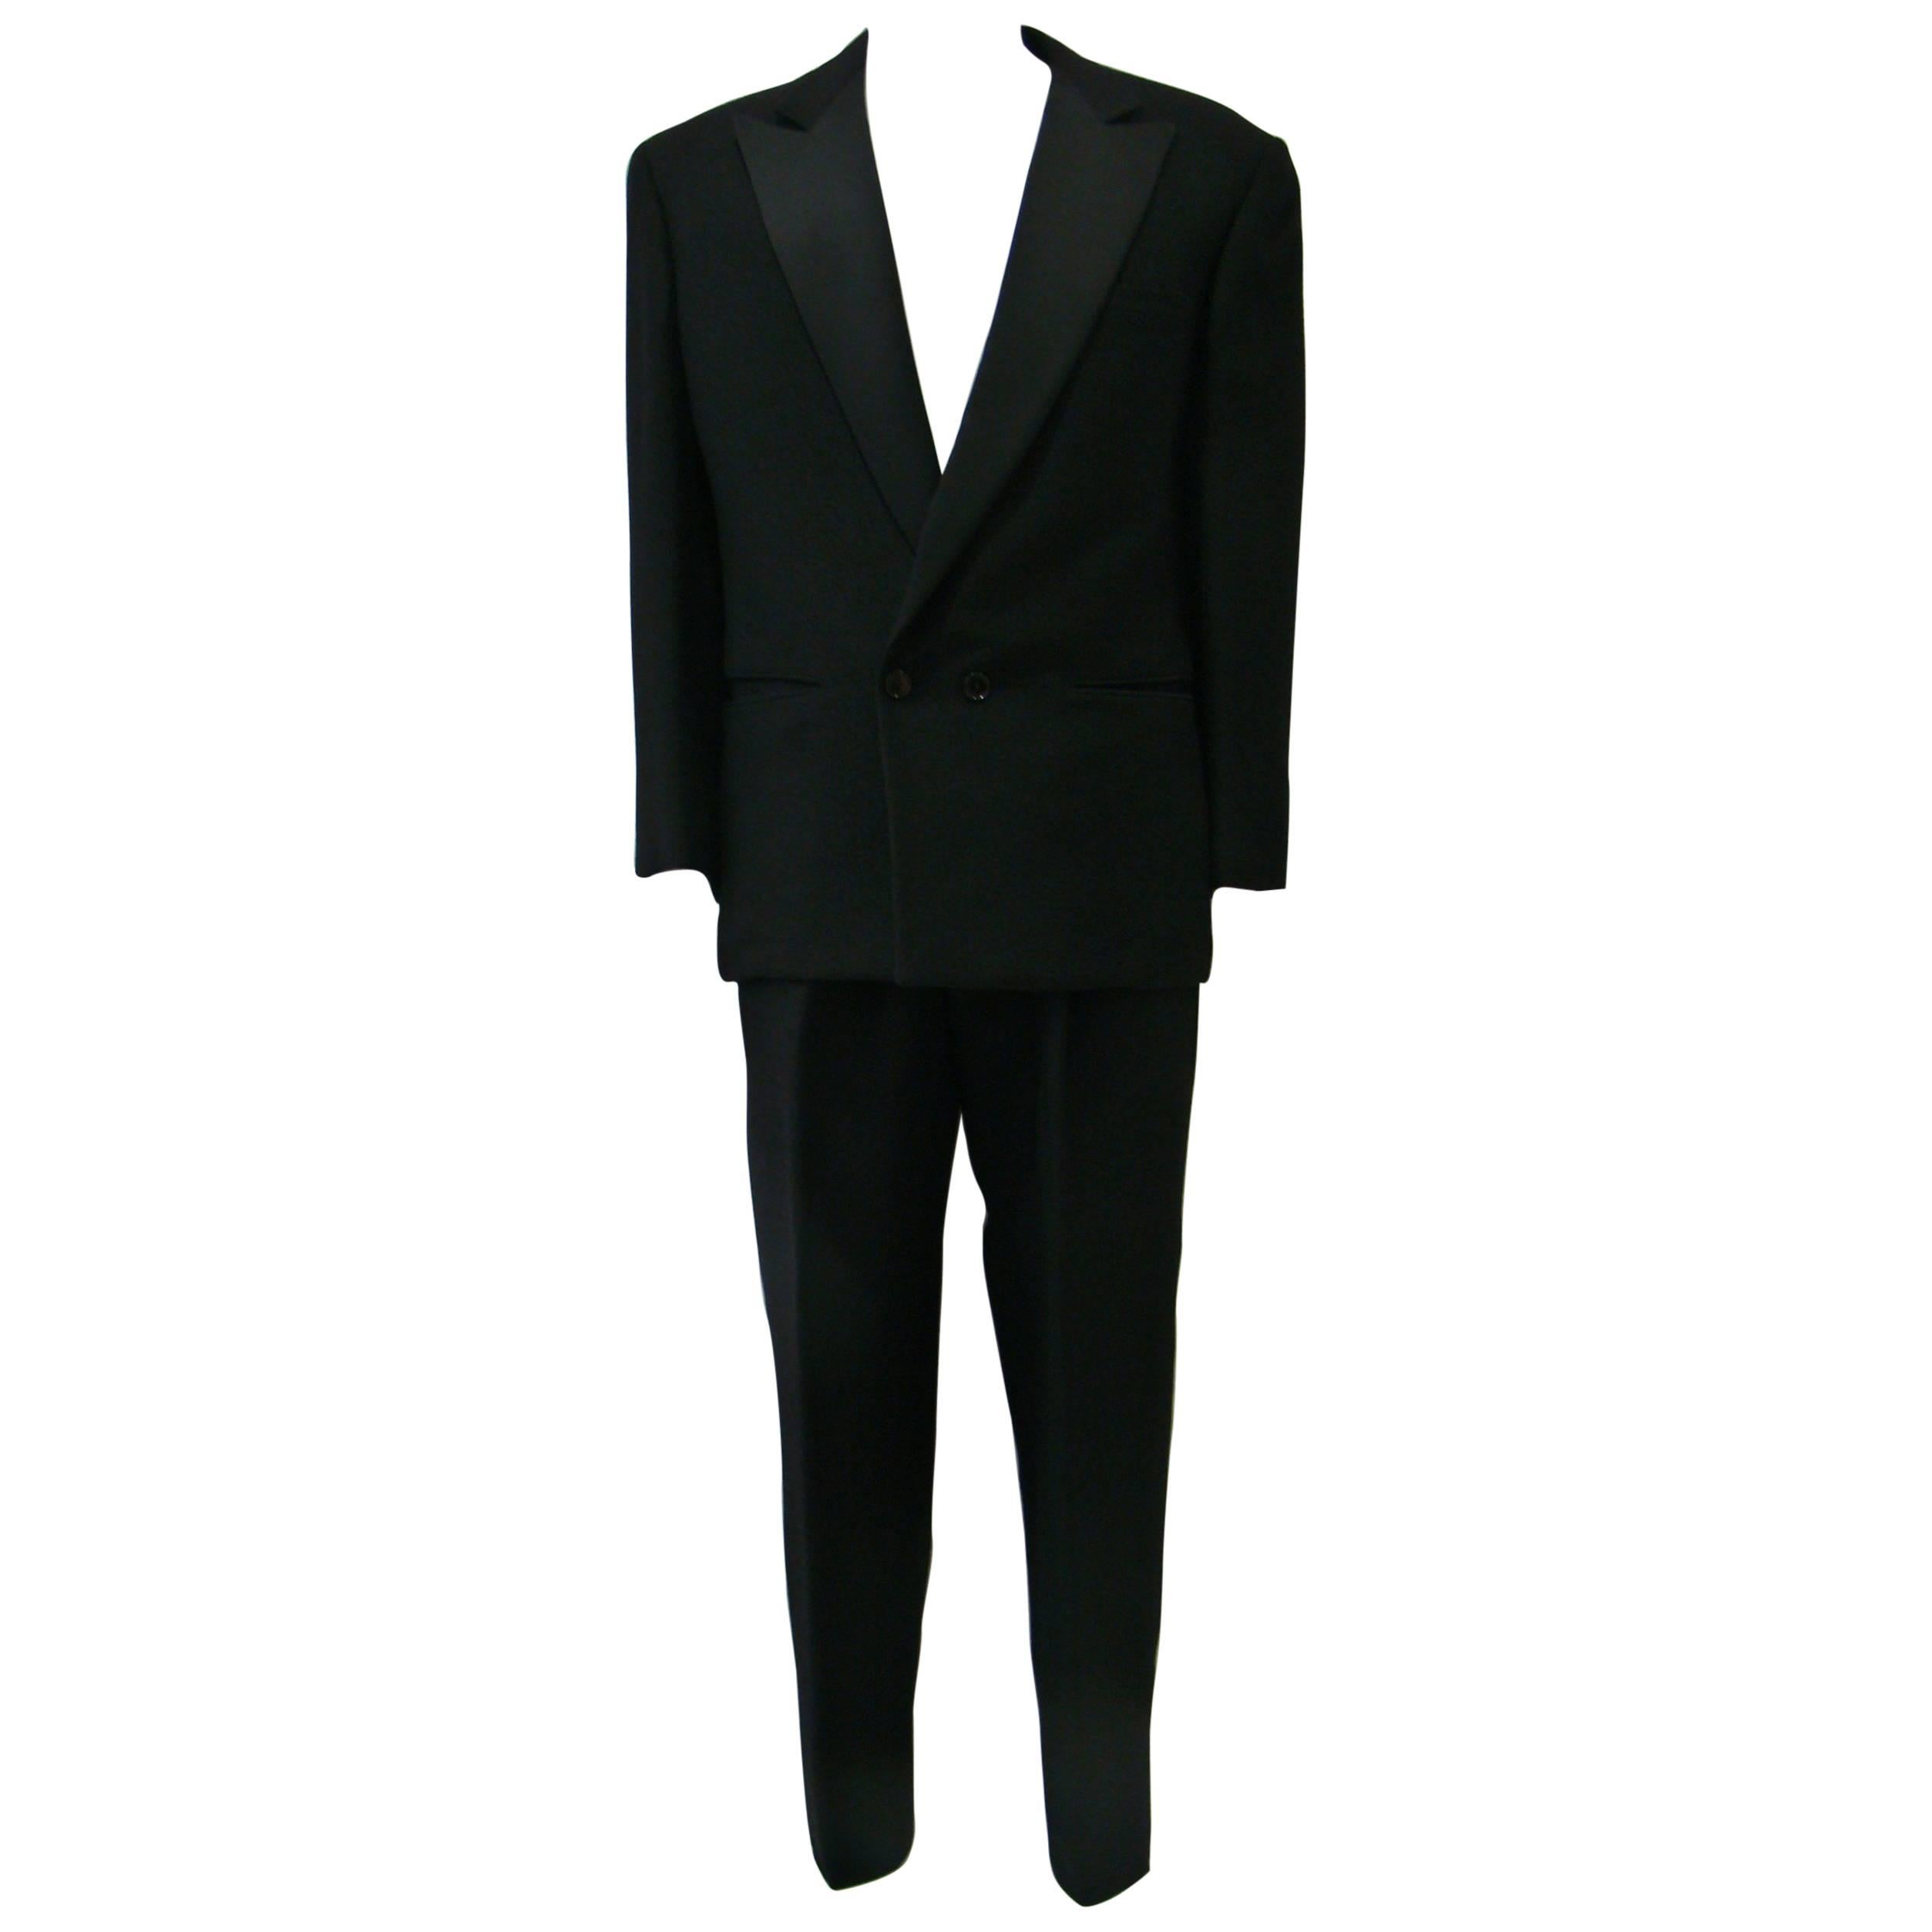 Unique Gianni Versace Smoking Suit For Sale